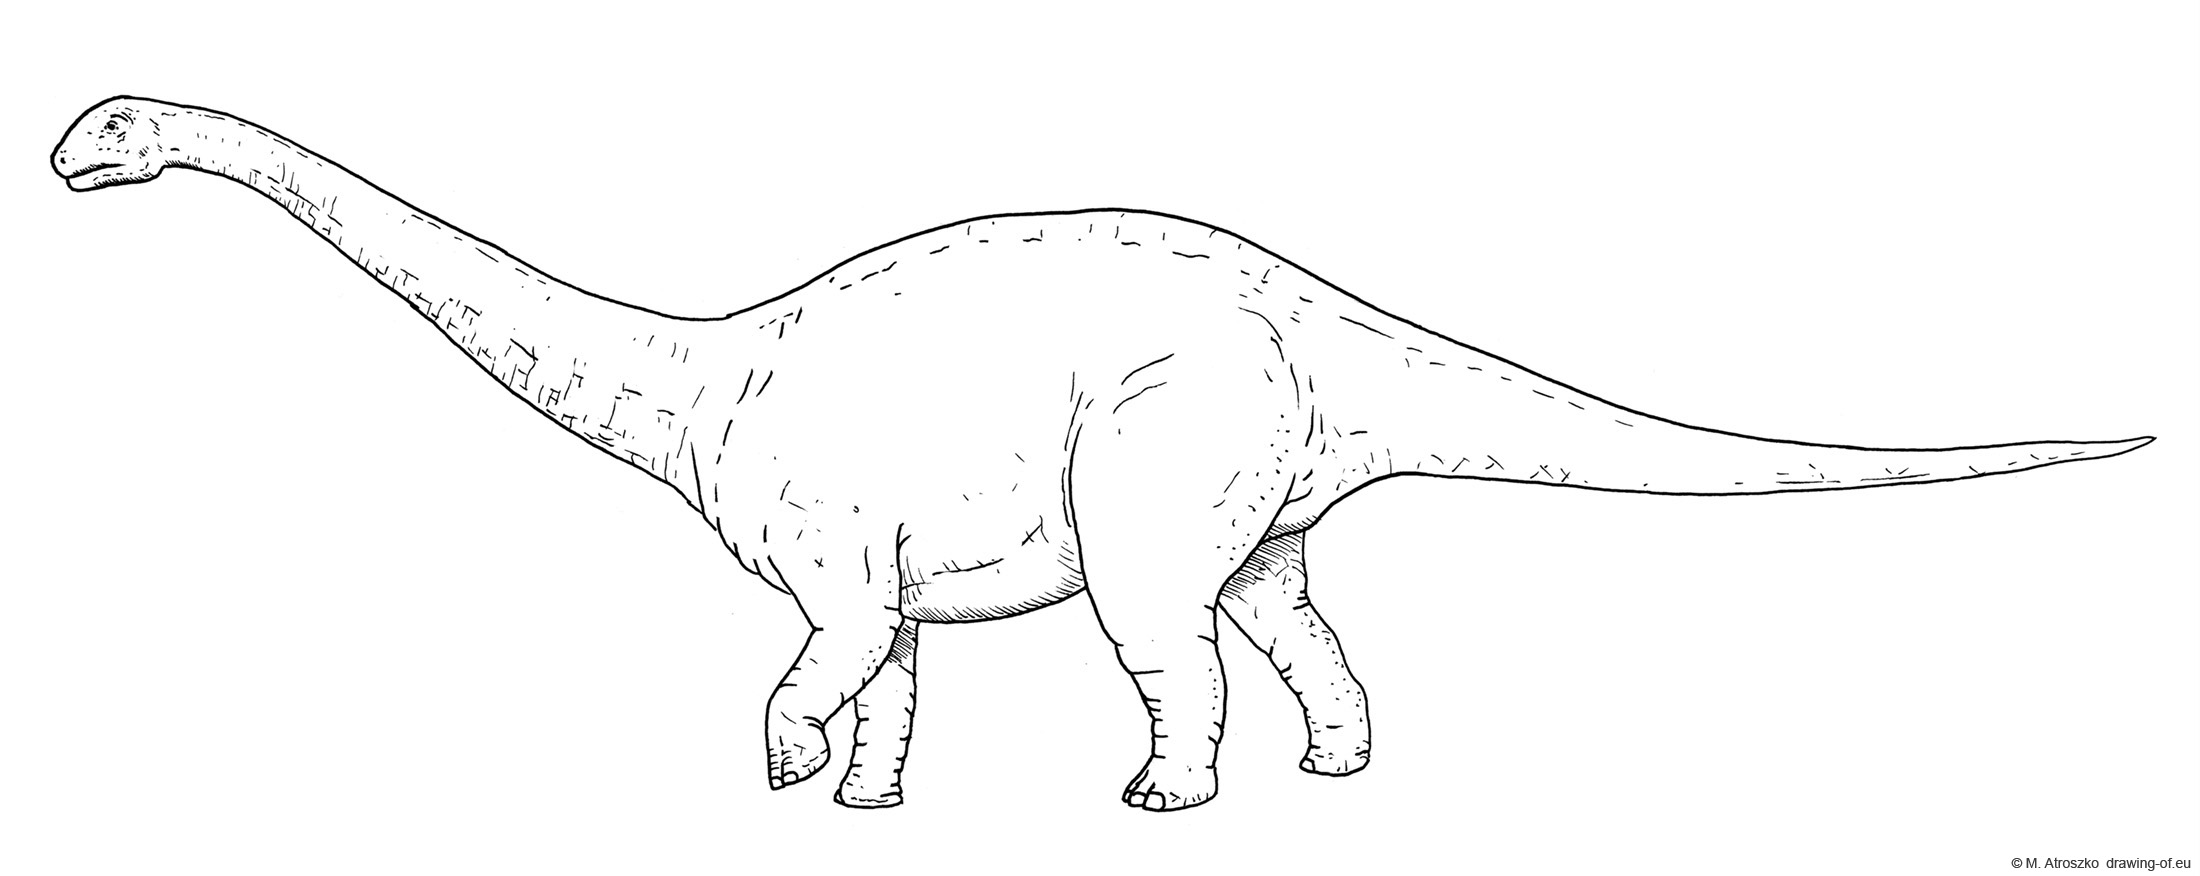 Drawing of Apatosaurus